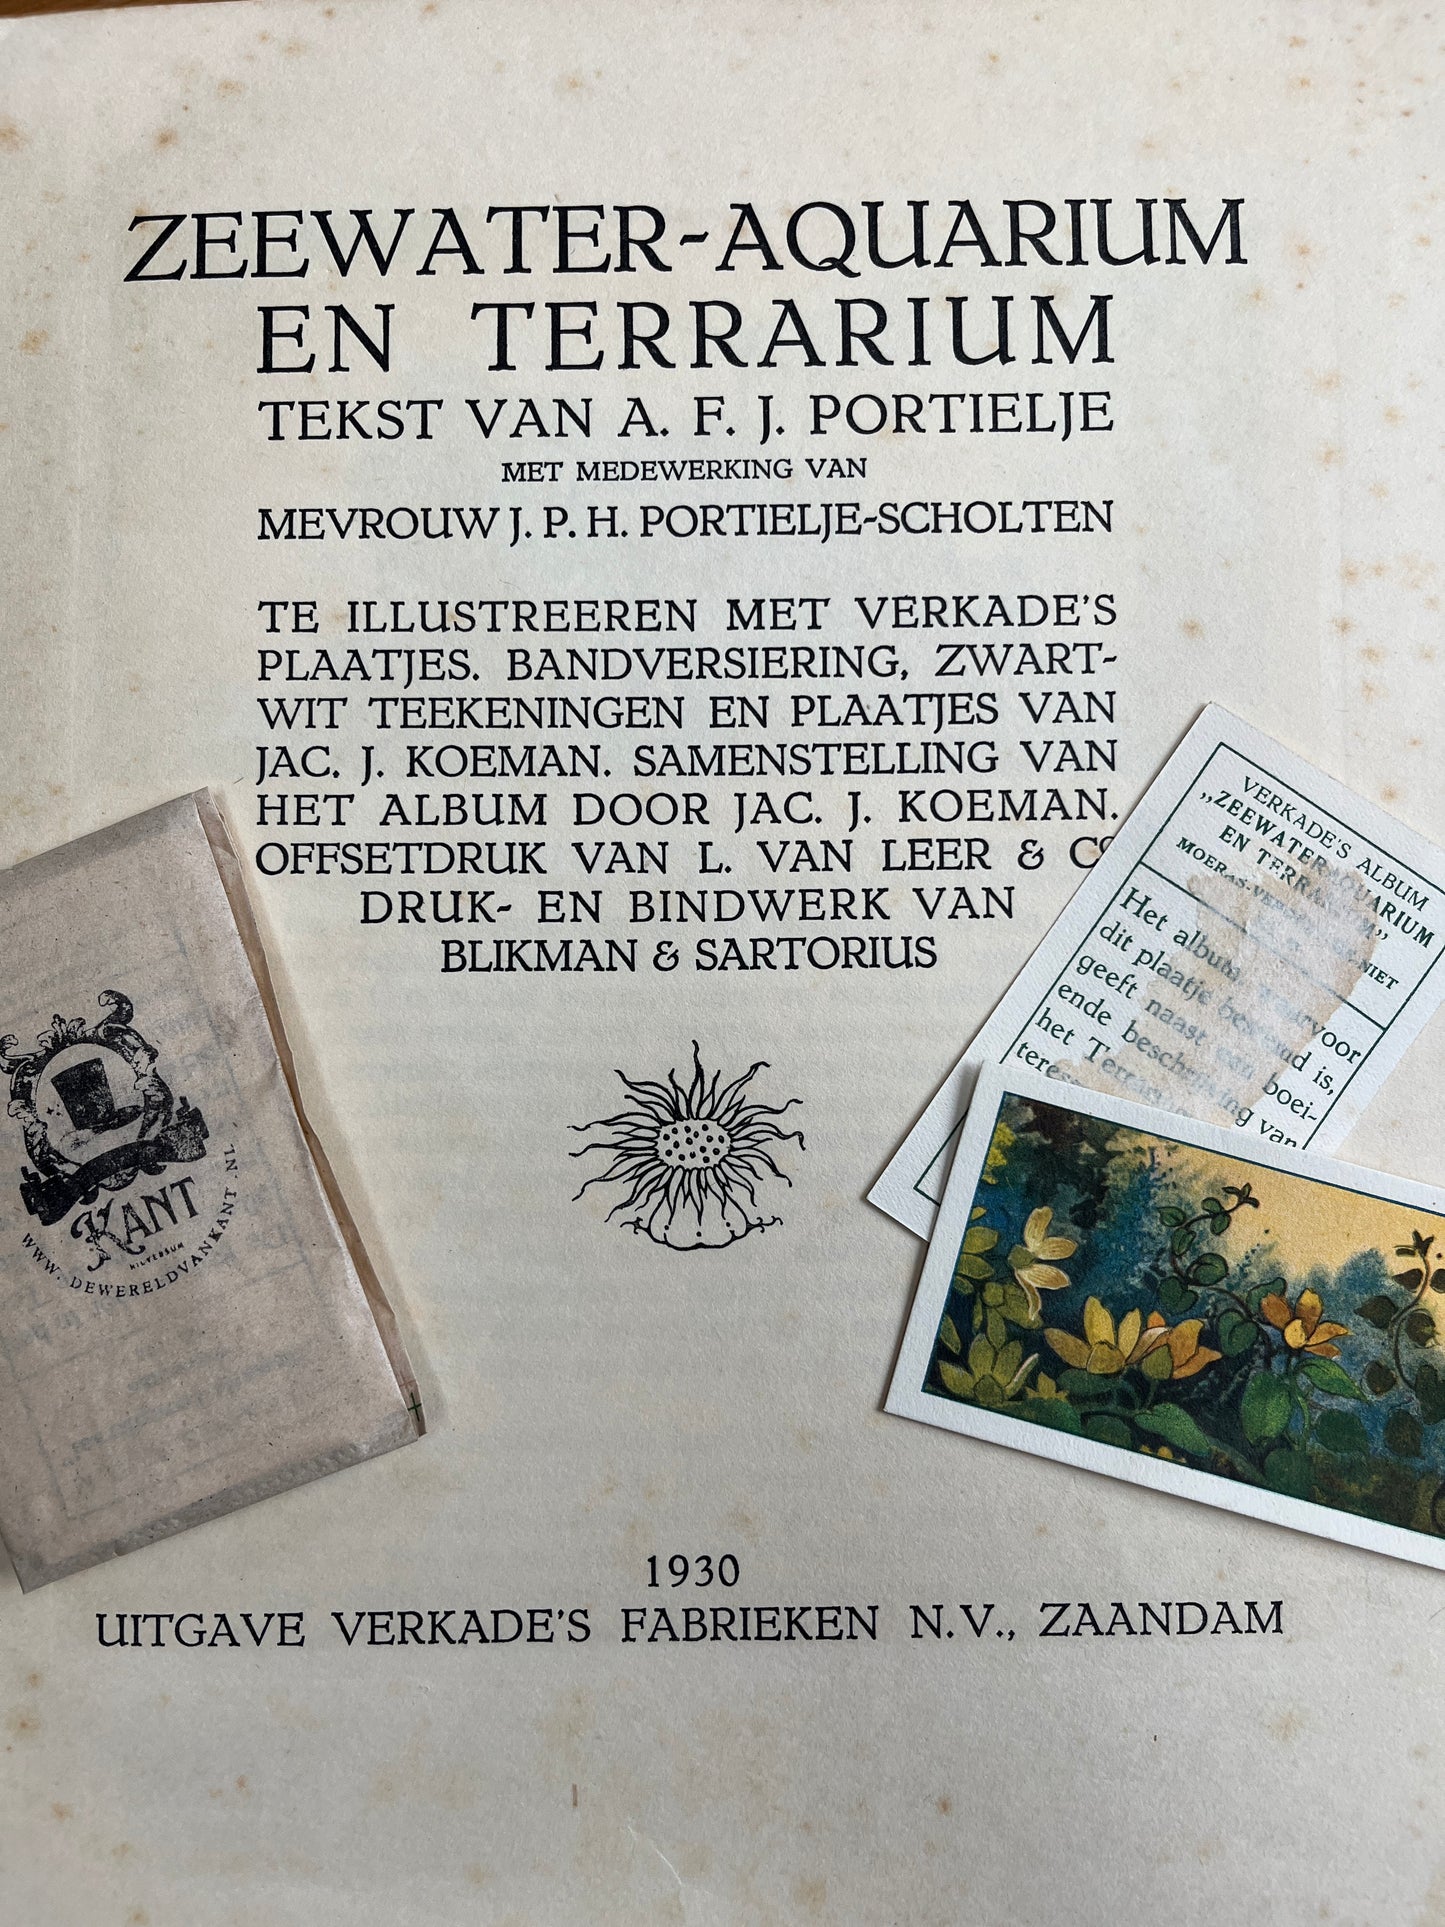 6 Verkade pictures Seawater aquarium and terrarium 1930 (103-108)